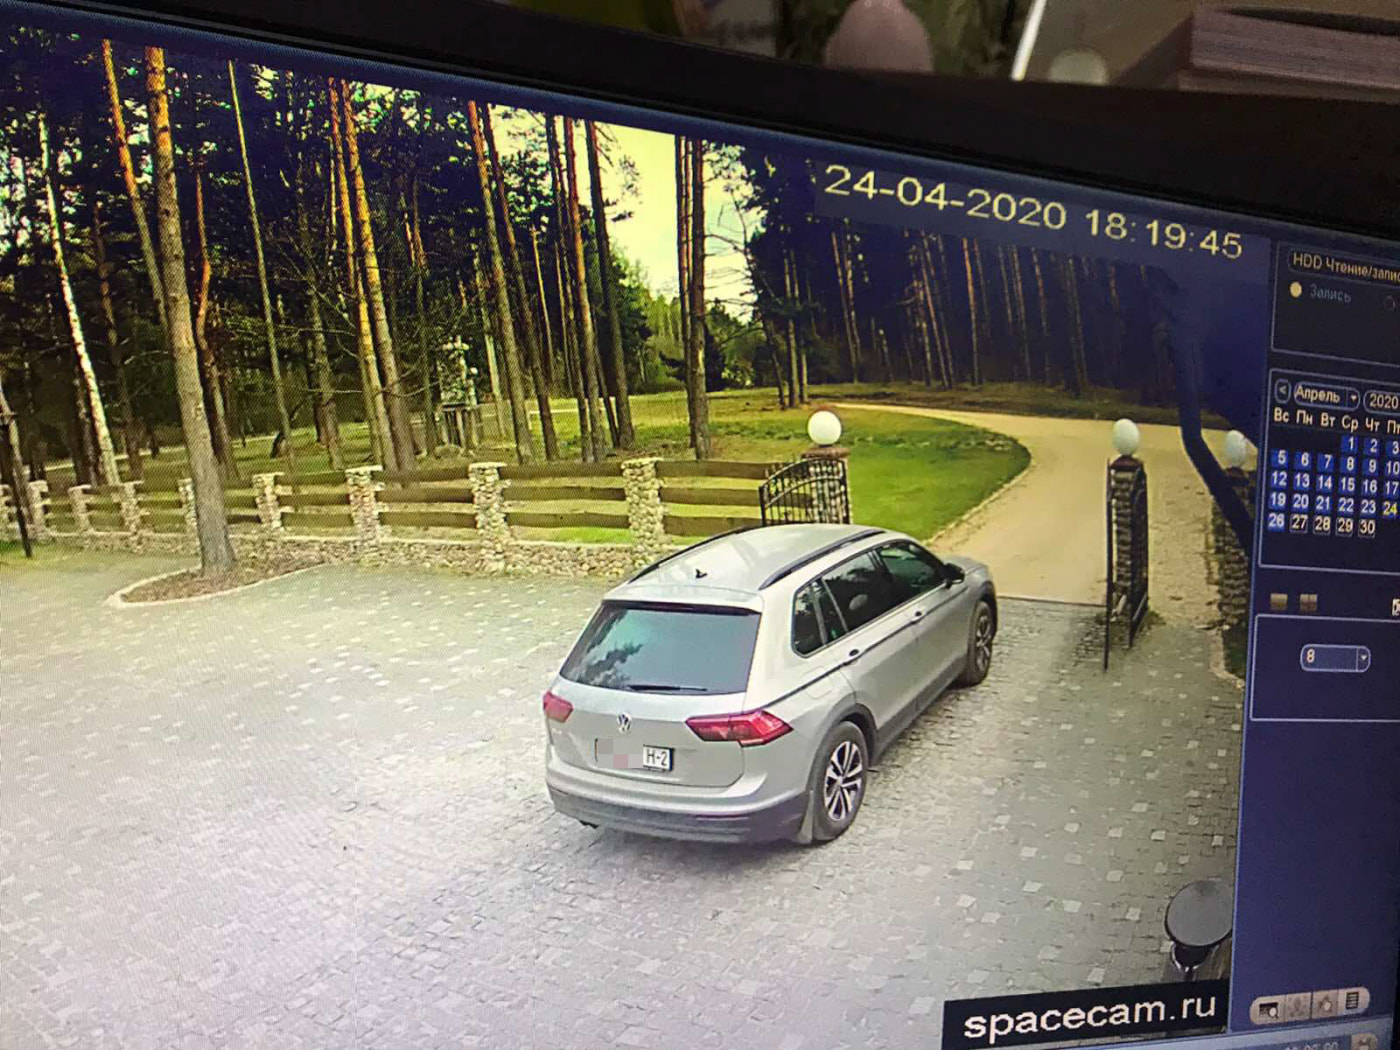 Время выезда машины с тестем Антона зафиксировано системой видео-наблюдения комплекса. Скриншот прислан вместе с официальным ответом